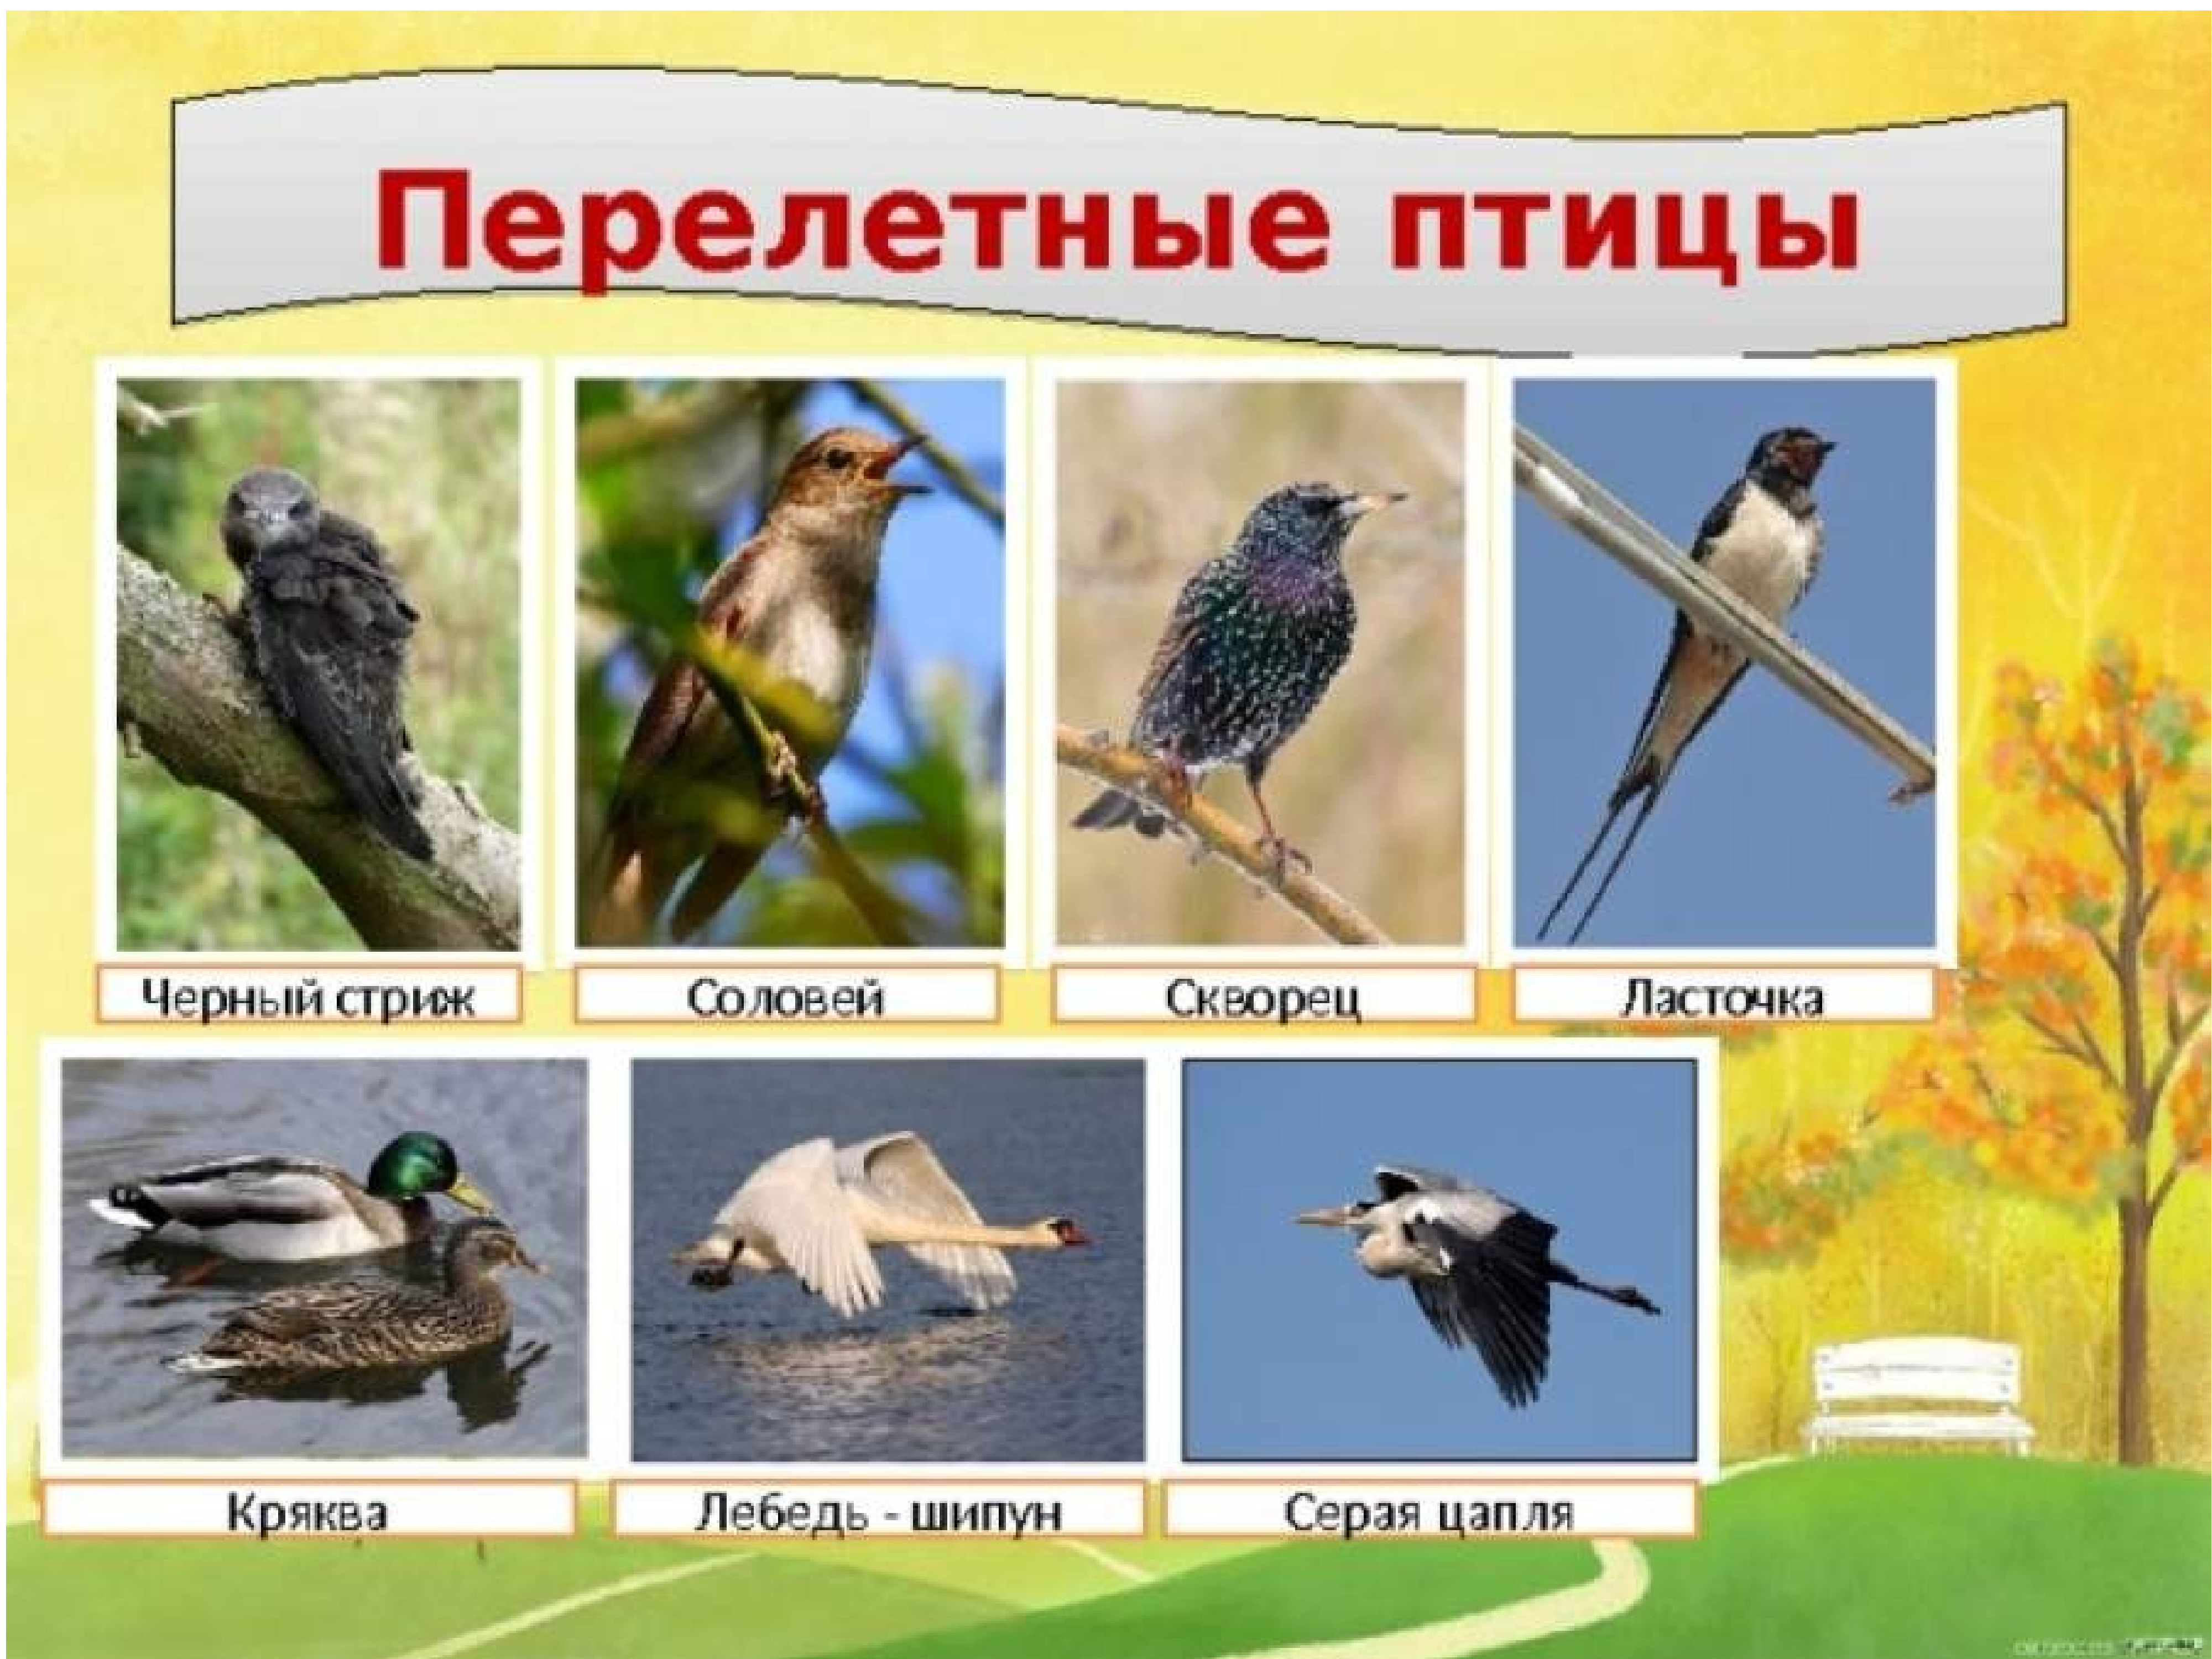 Фото перелетных птиц для детей. Перелетные птицы. Перелетные птицы для детей. Перелетныептиц для детей. Перелётные птицы названия для детей.